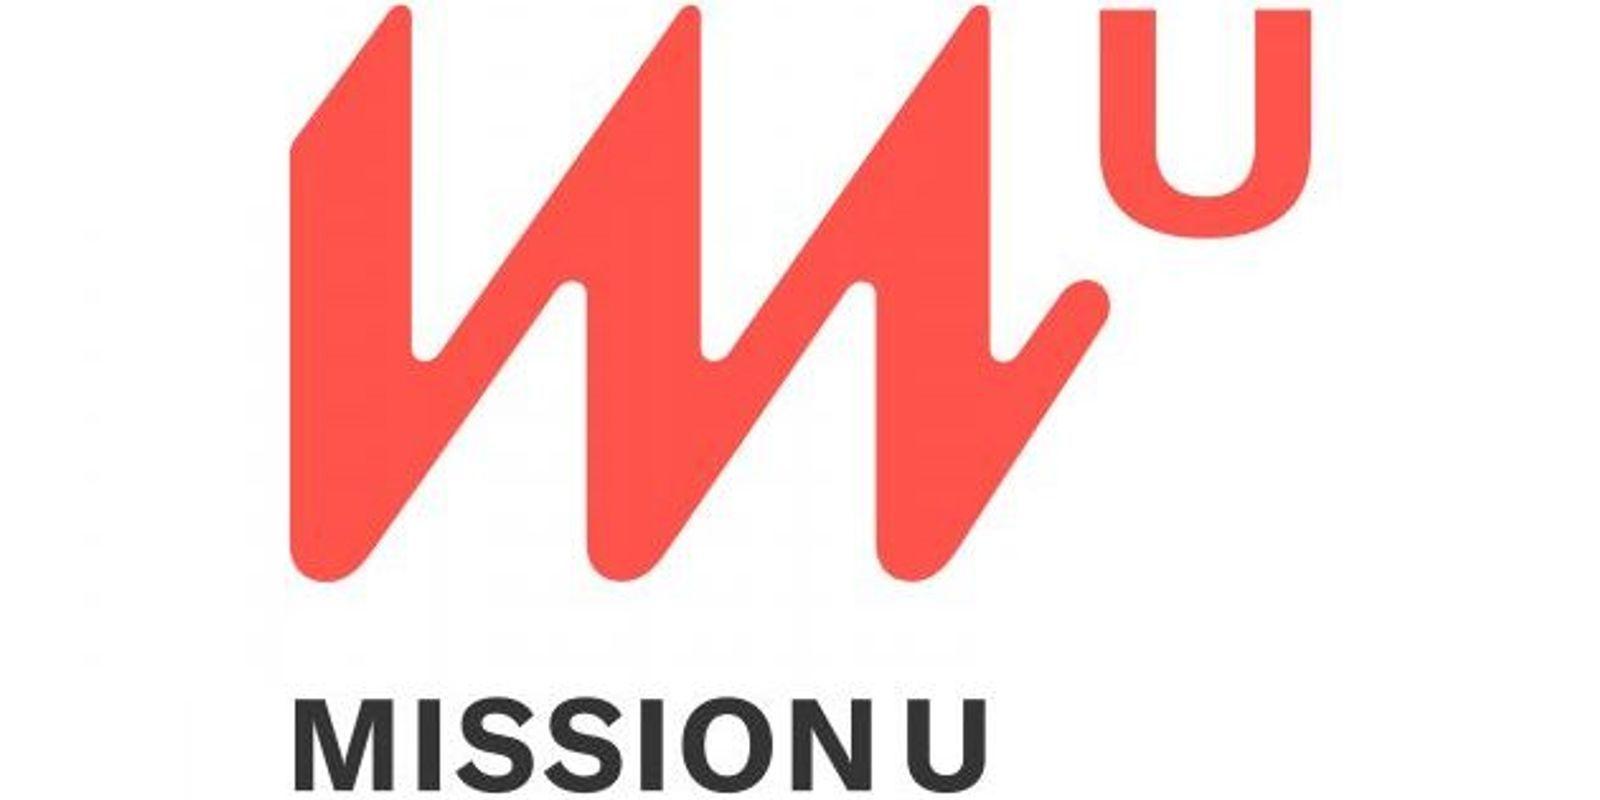 Mission U Logo - How I became a nonprofit founder: Adam Braun